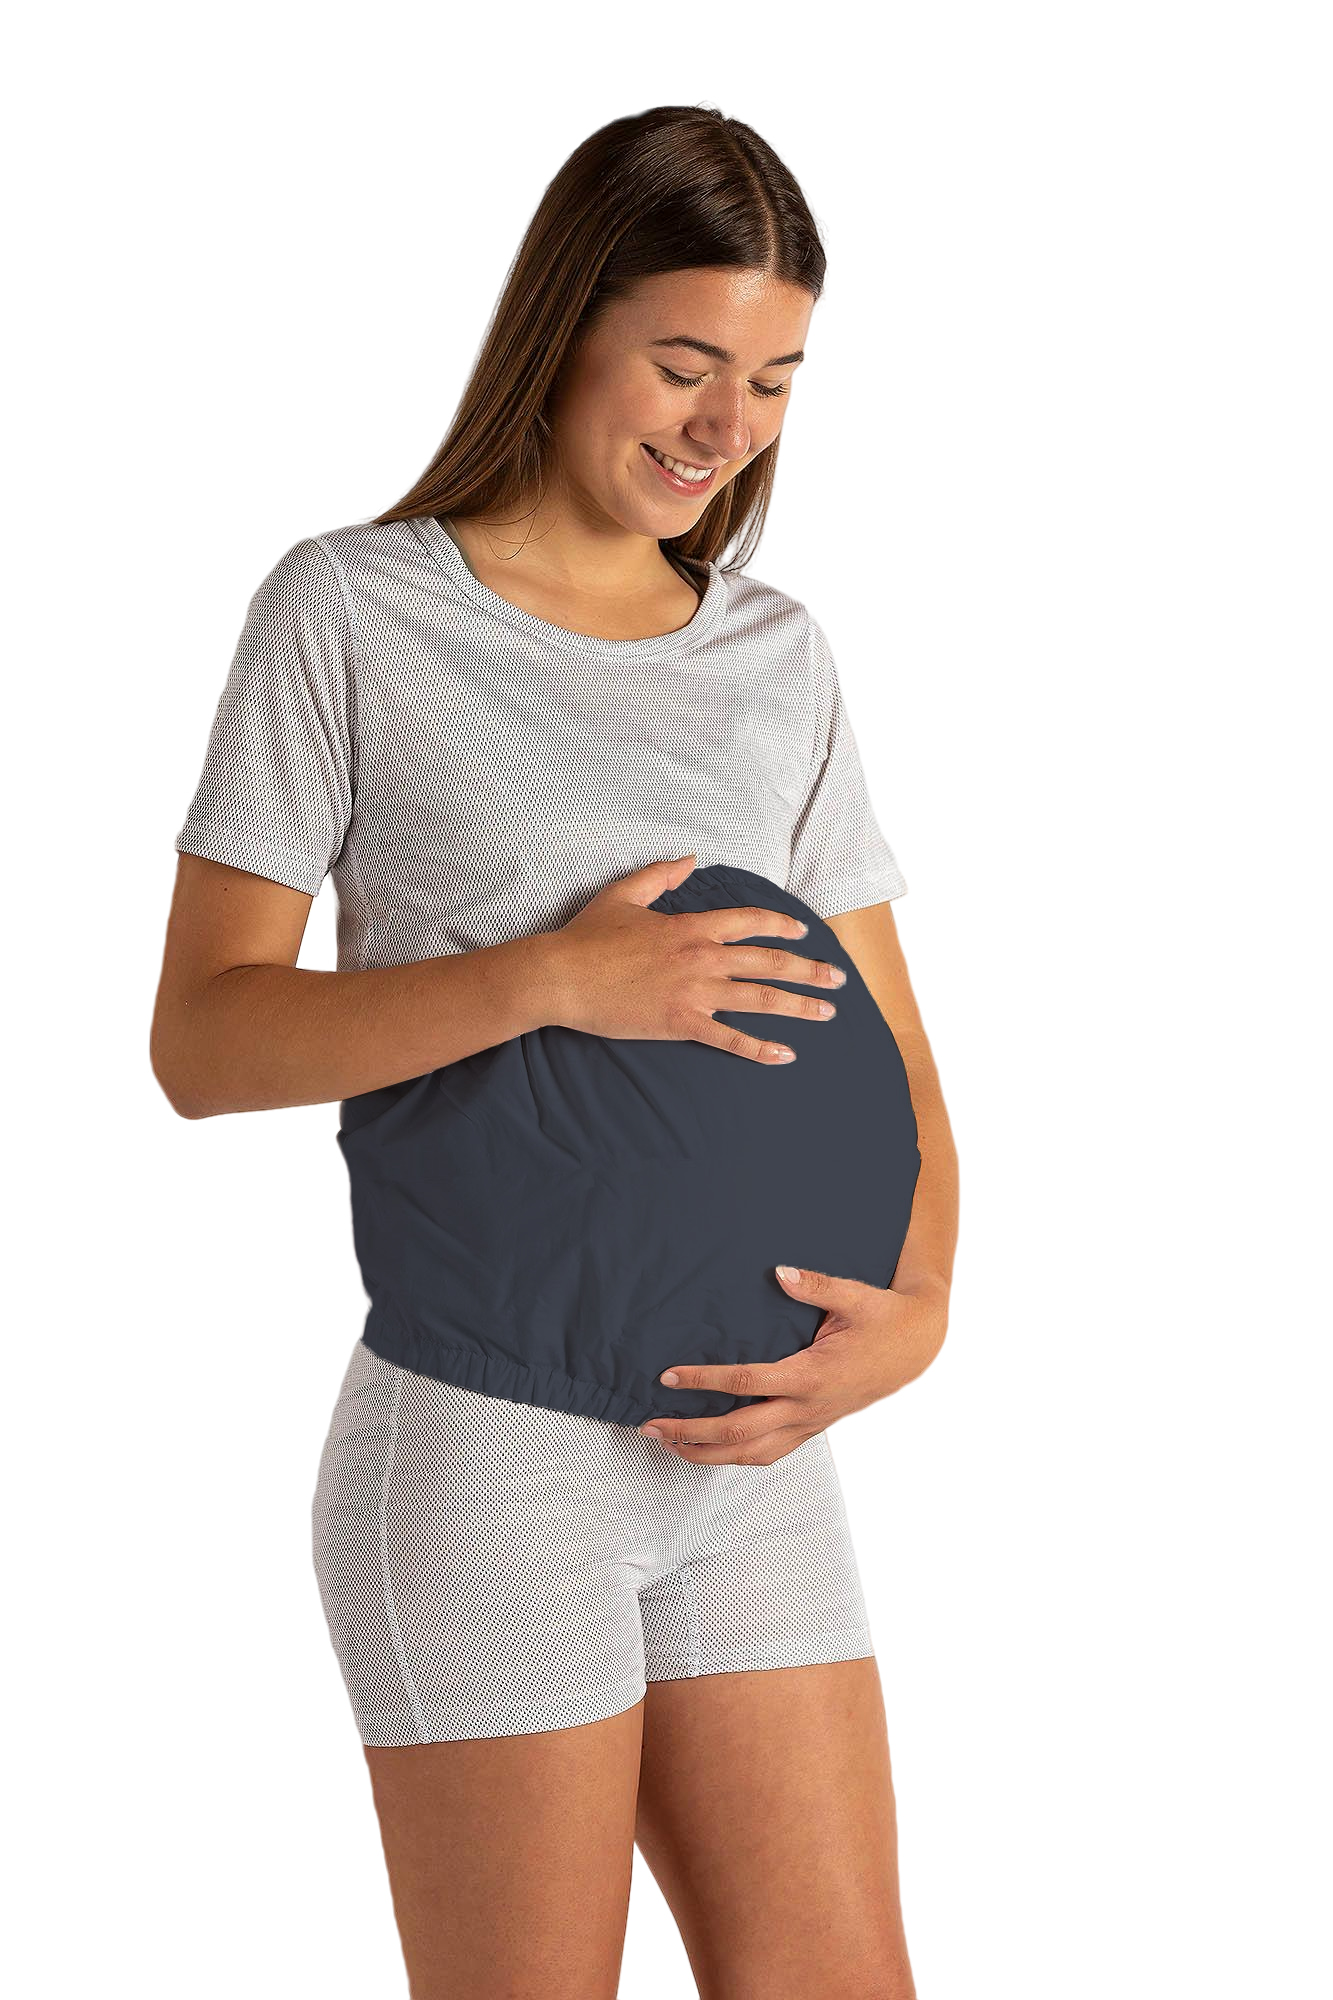 Cintura di gravidanza ad alta sicurezza 50dB a 3,5GHz Dimensione universale  - WAVESAFE